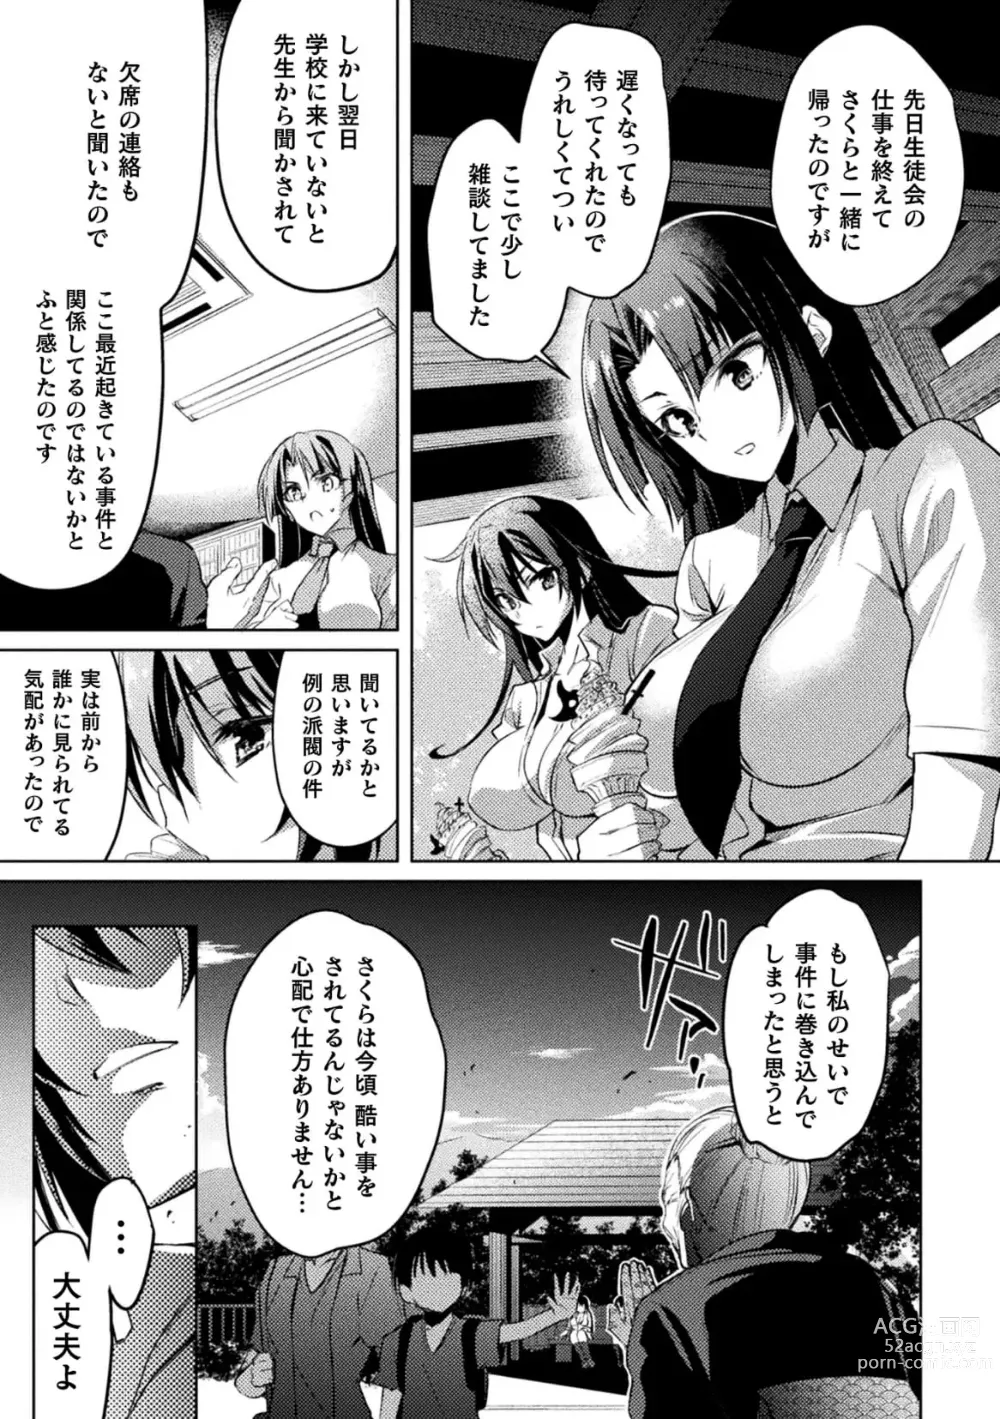 Page 19 of manga Taimanin Asagi ZERO THE COMIC vol 1